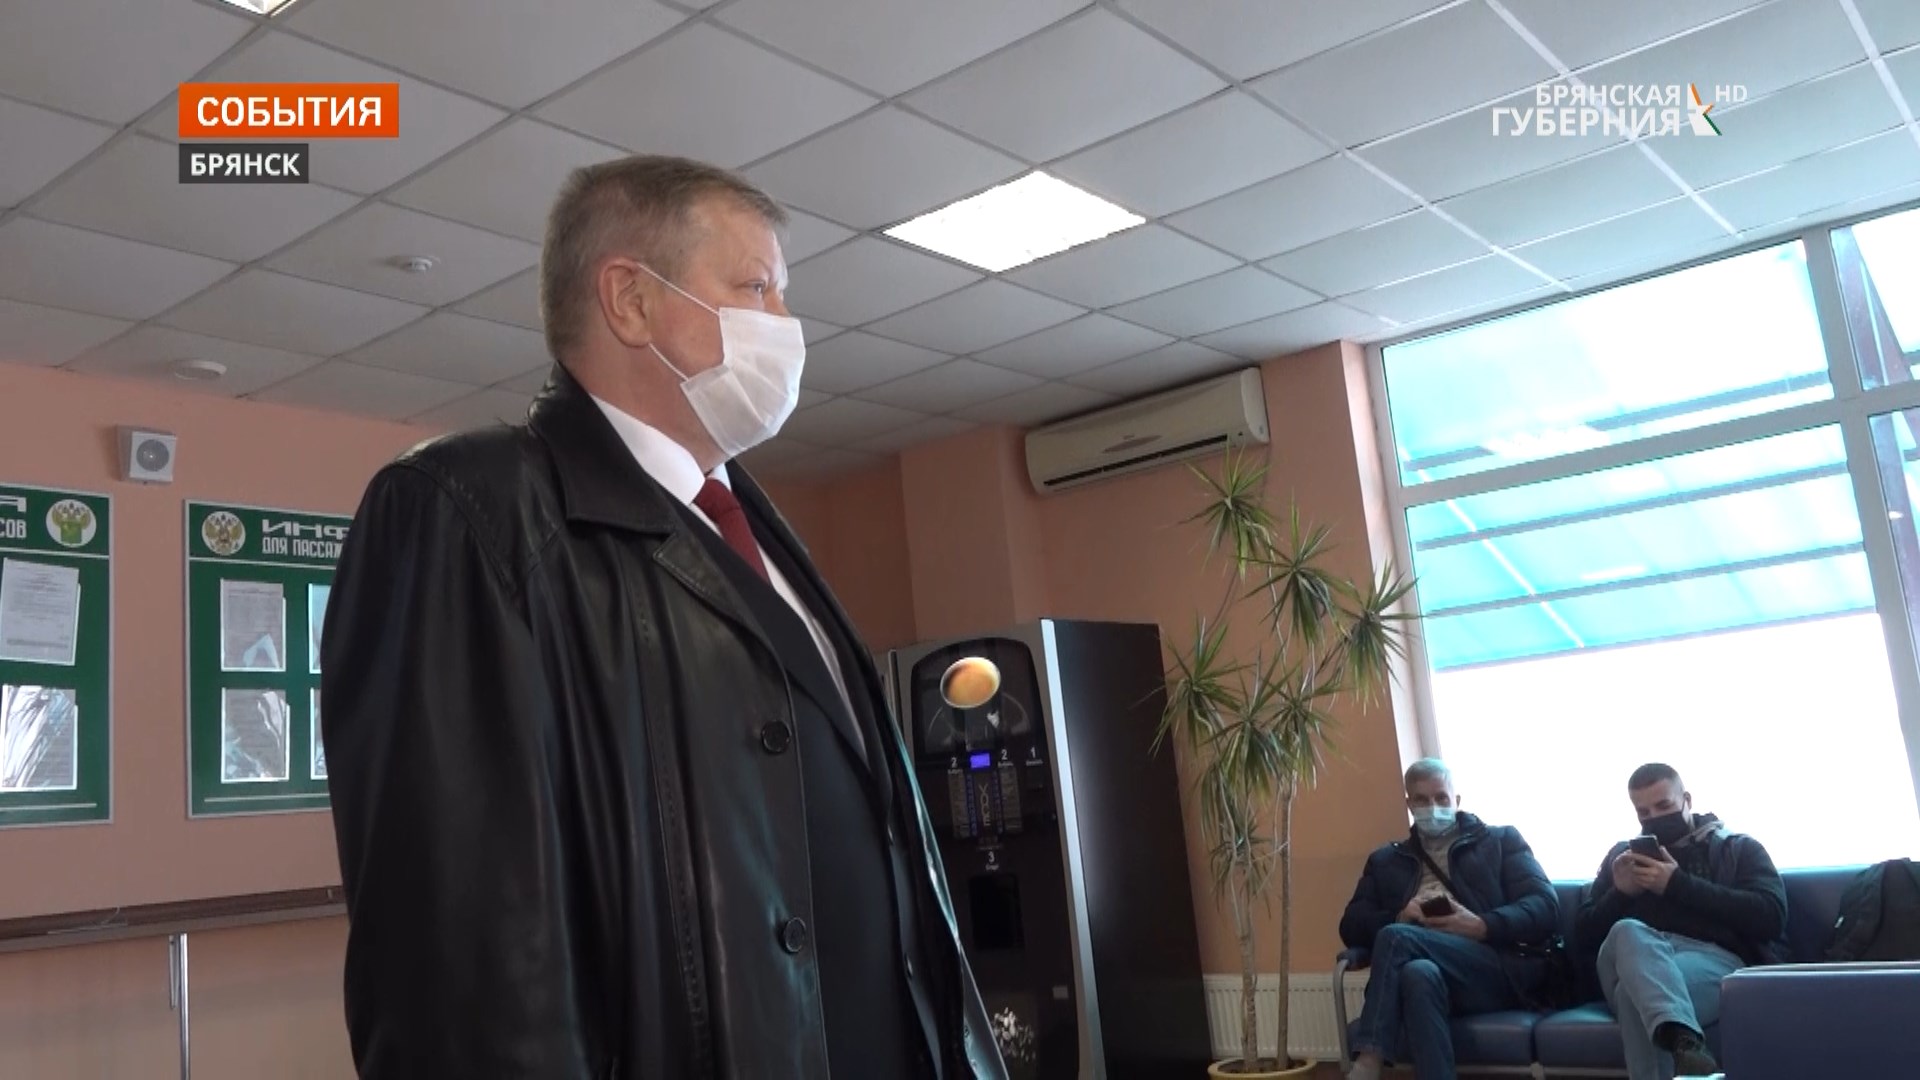 В аэропорту «Брянск» ужесточили санитарные правила